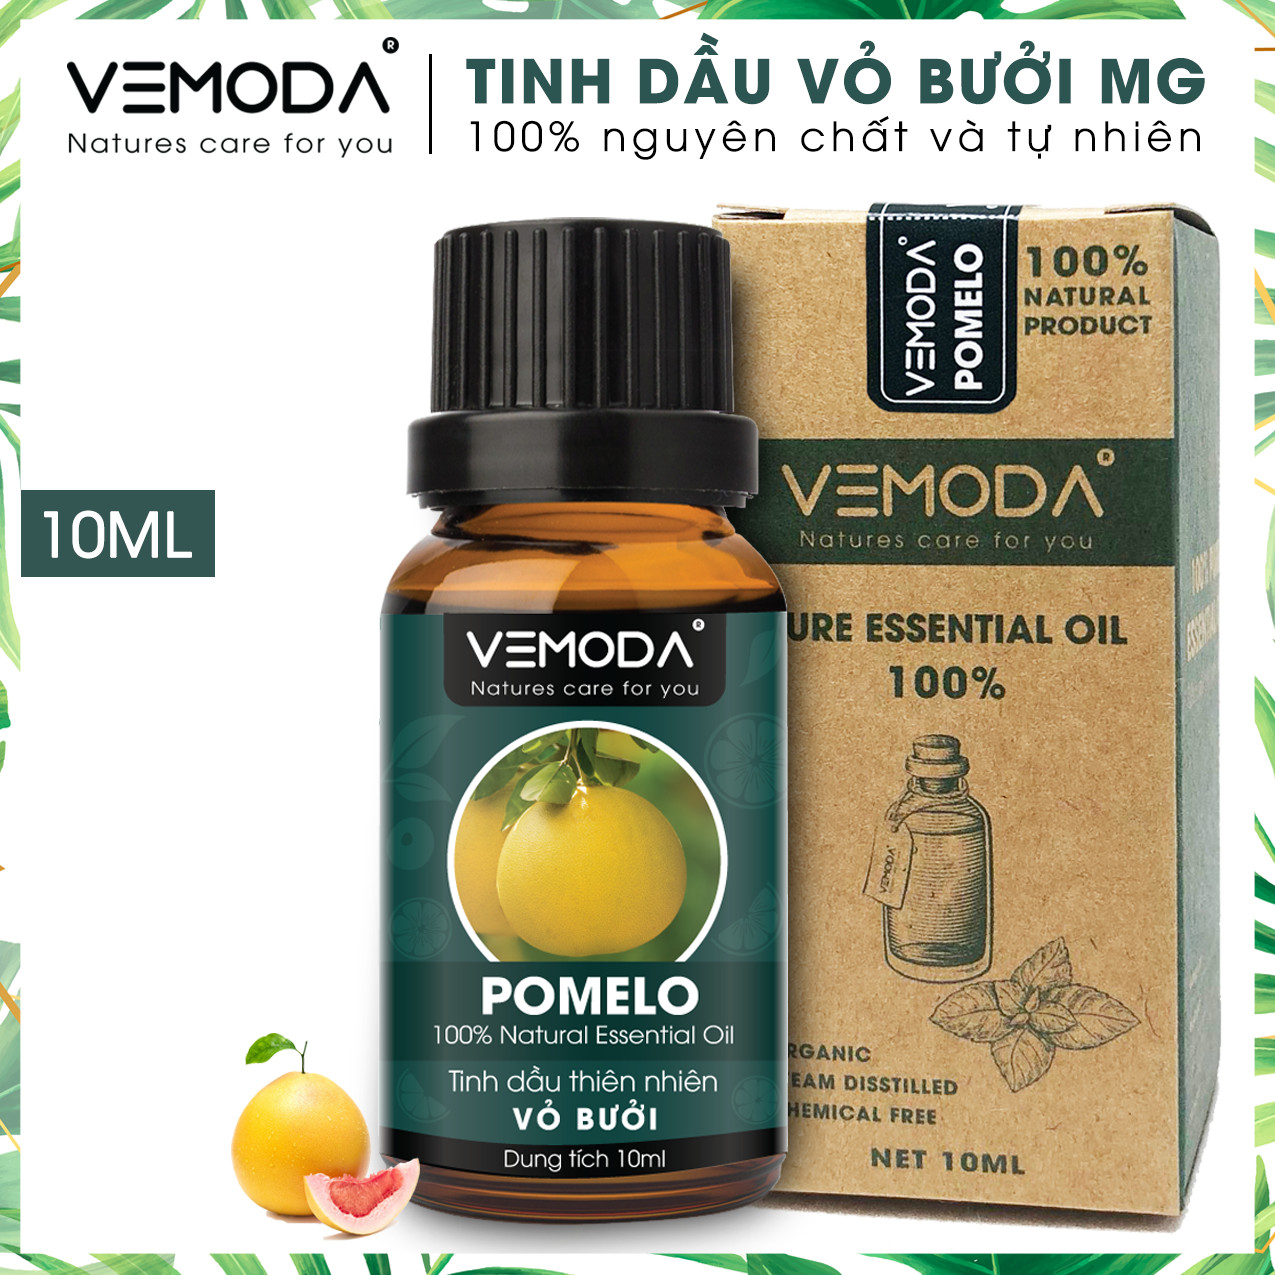 Tinh dầu Vỏ bưởi MG cao cấp Vemoda 10ML. Pomelo Essential Oil. Tinh dầu xông phòng giúp kháng khuẩn, khử mùi, cân bằng cảm xúc, hỗ trợ chăm sóc da và tóc. Tinh dầu thơm phòng cao cấp Vemoda